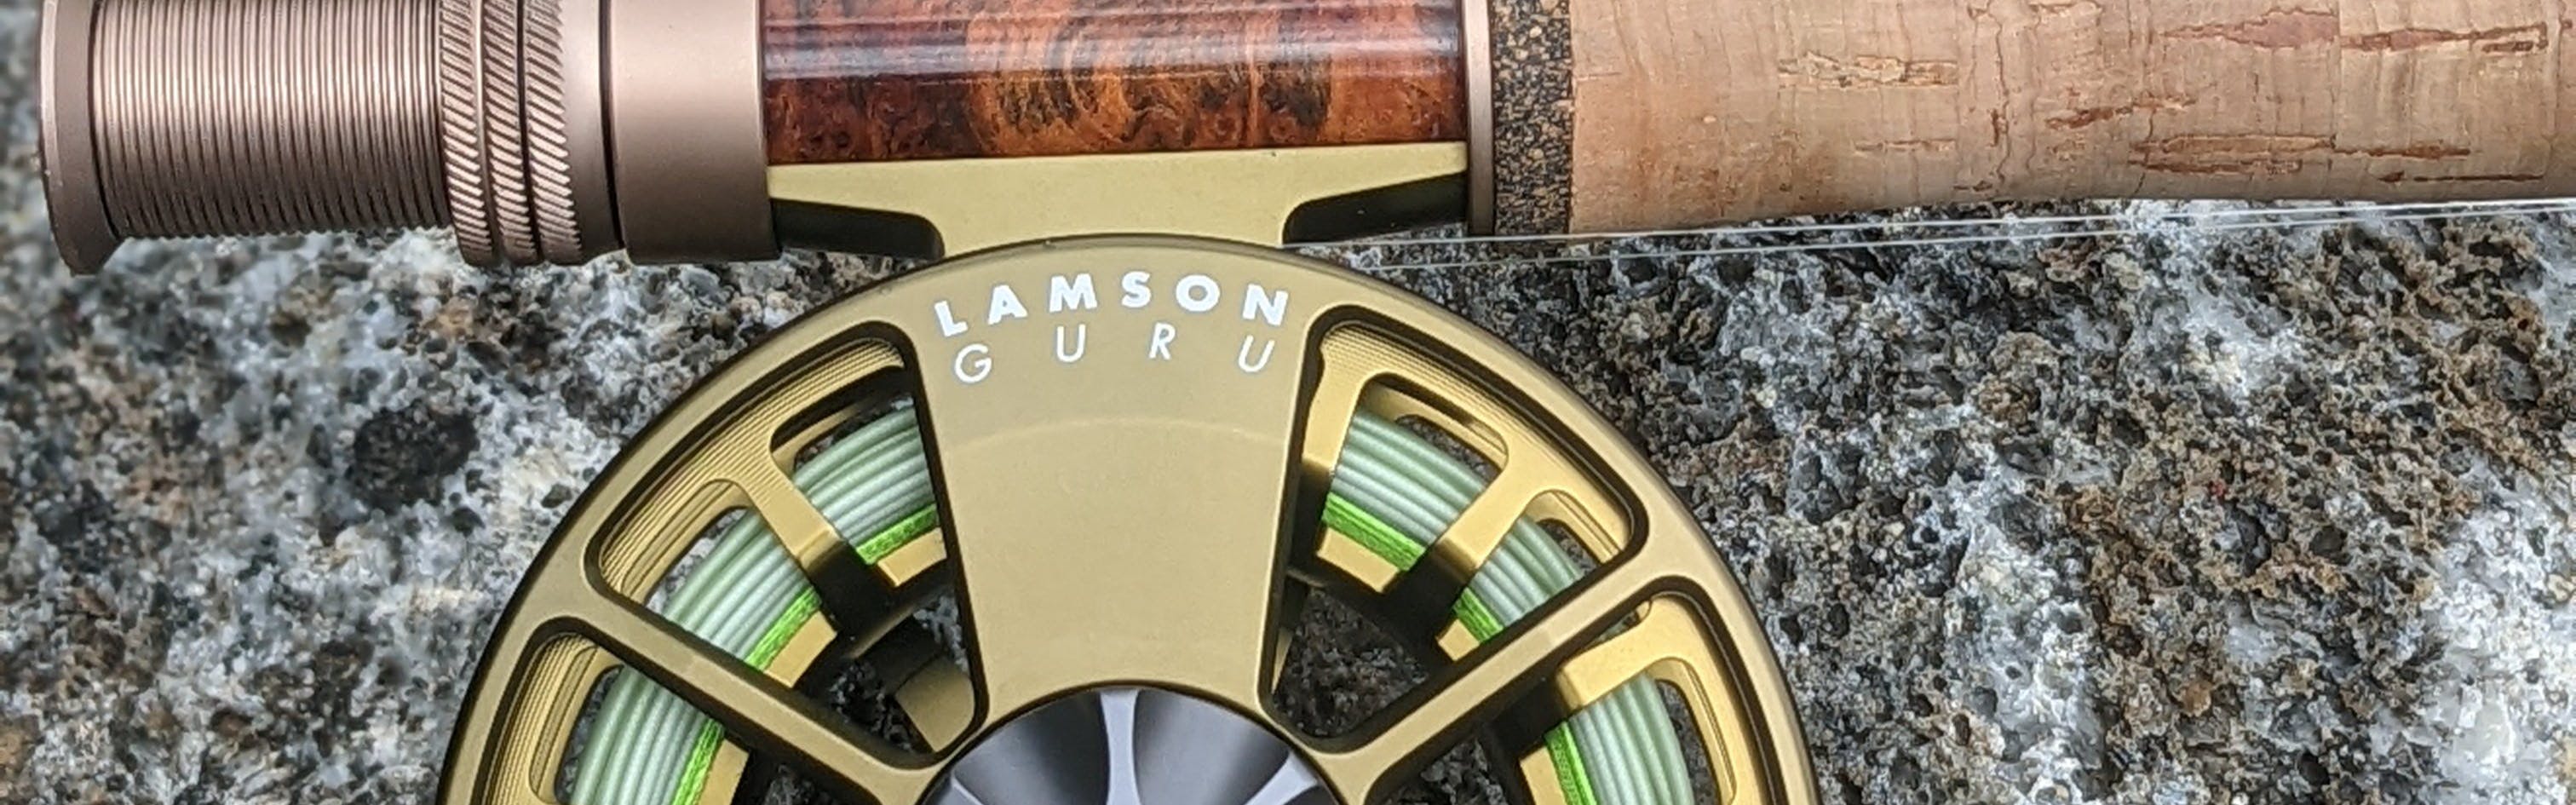 Lamson Guru S-Series Fly Fishing Reel Product Details